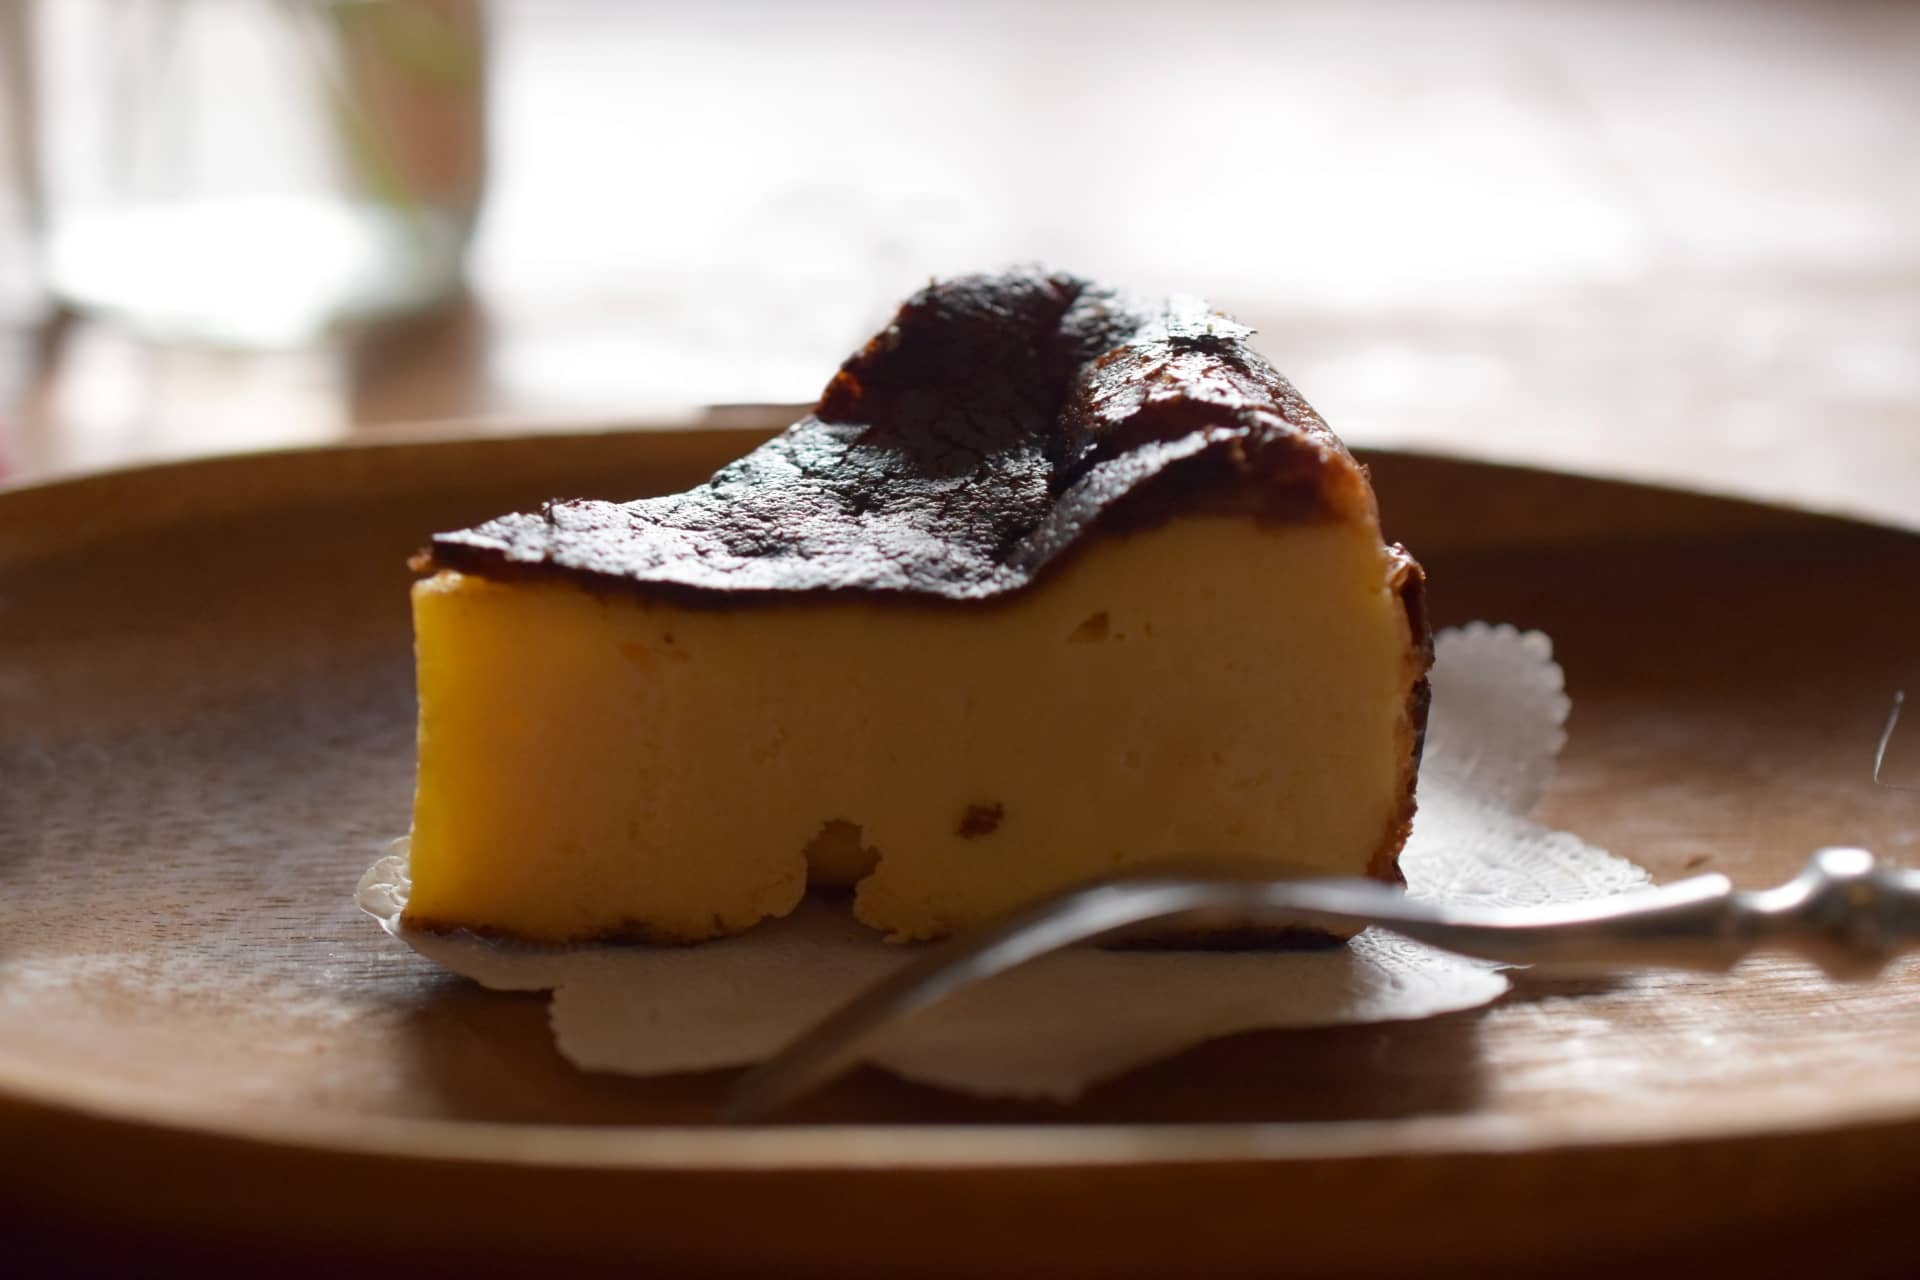 ポップup チーズケーキ1位 バスクチーズケーキ 広島県 むすびスイーツ の通販お取り寄せ情報 Activi Tv